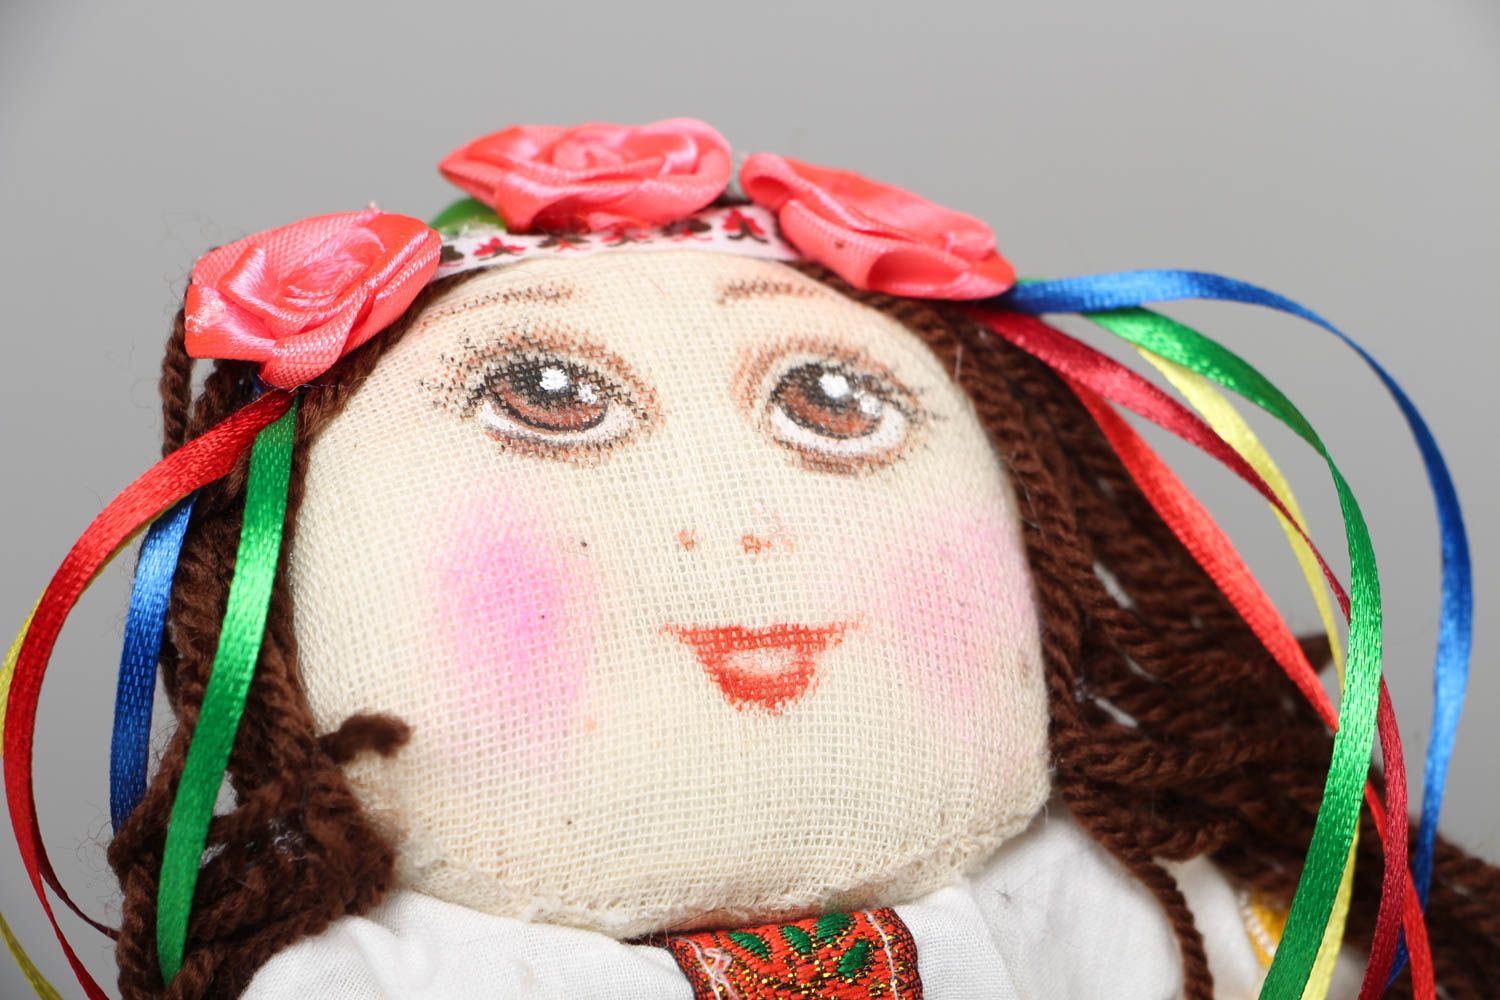 Textil Puppe handmade Ukrainerin foto 2